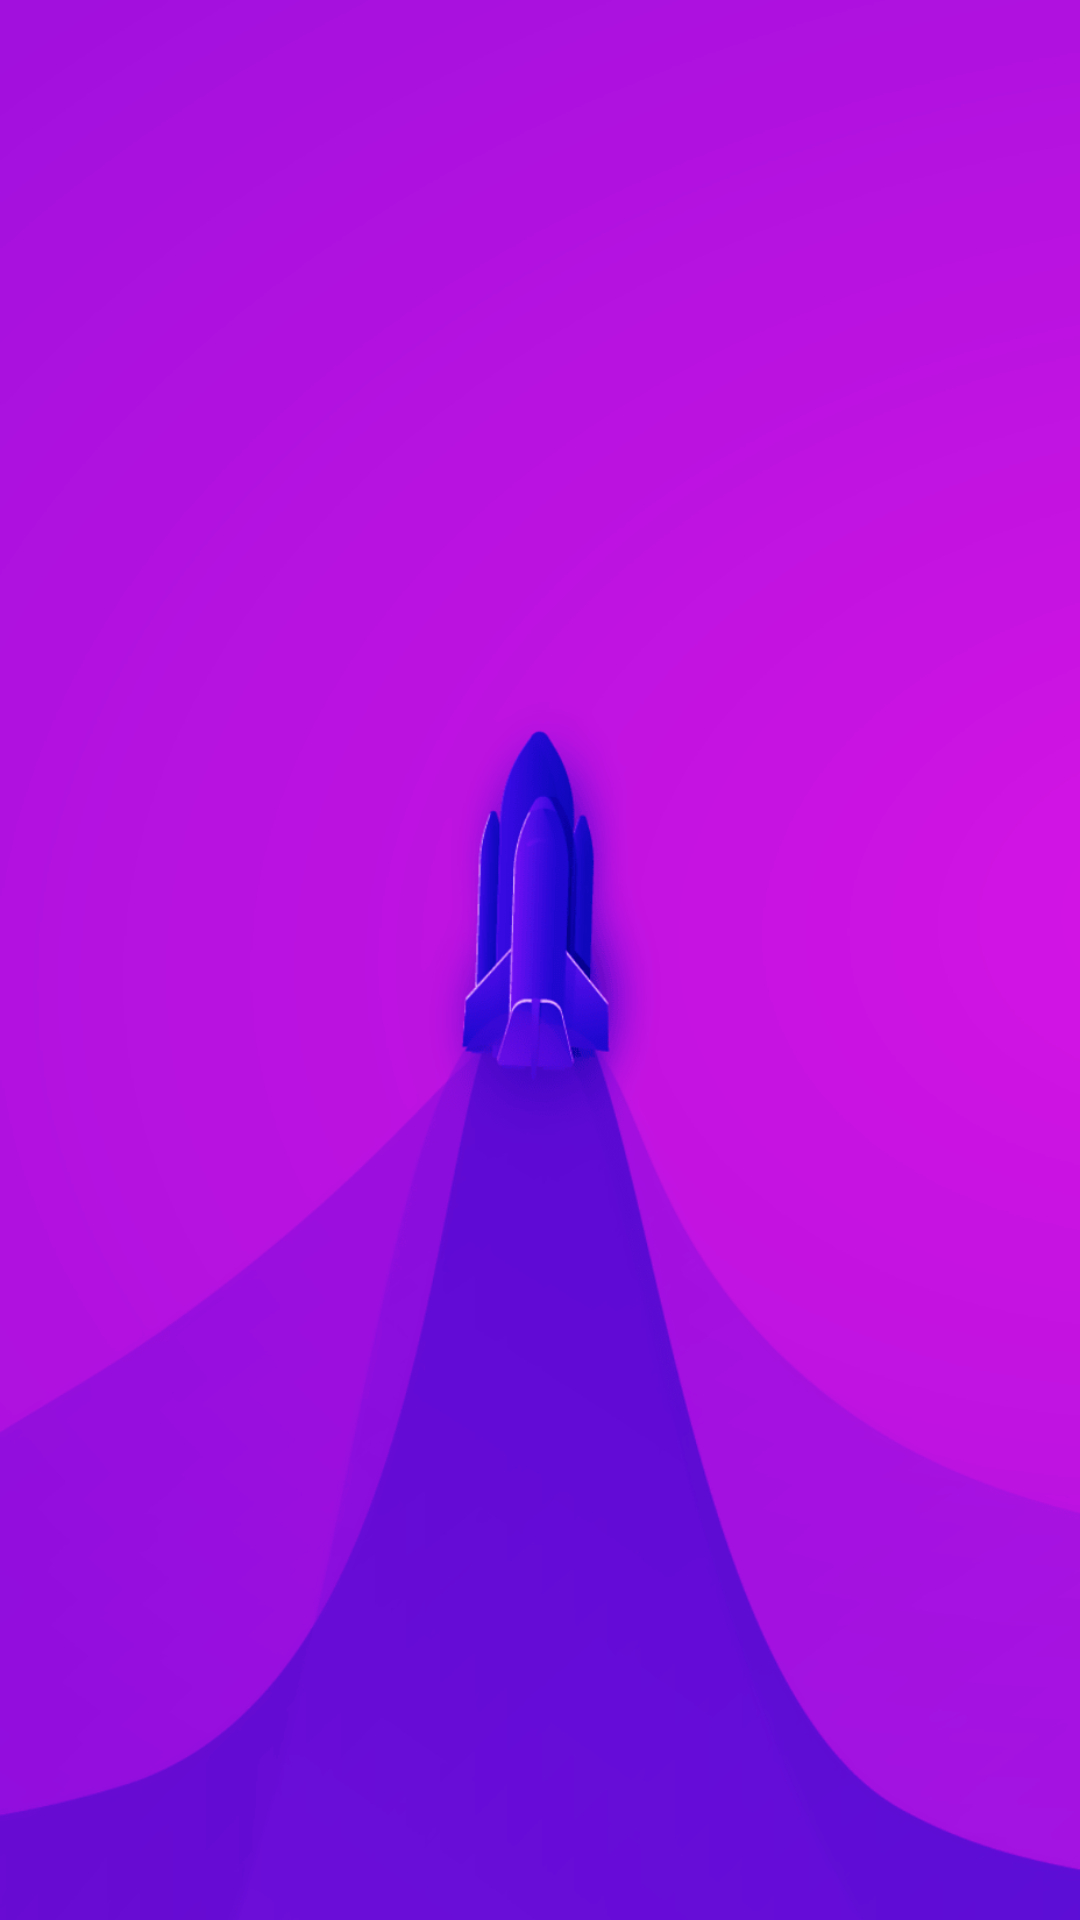 1080x1920 Purple Wallpapers Top 35 Best Purple Backgrounds Download